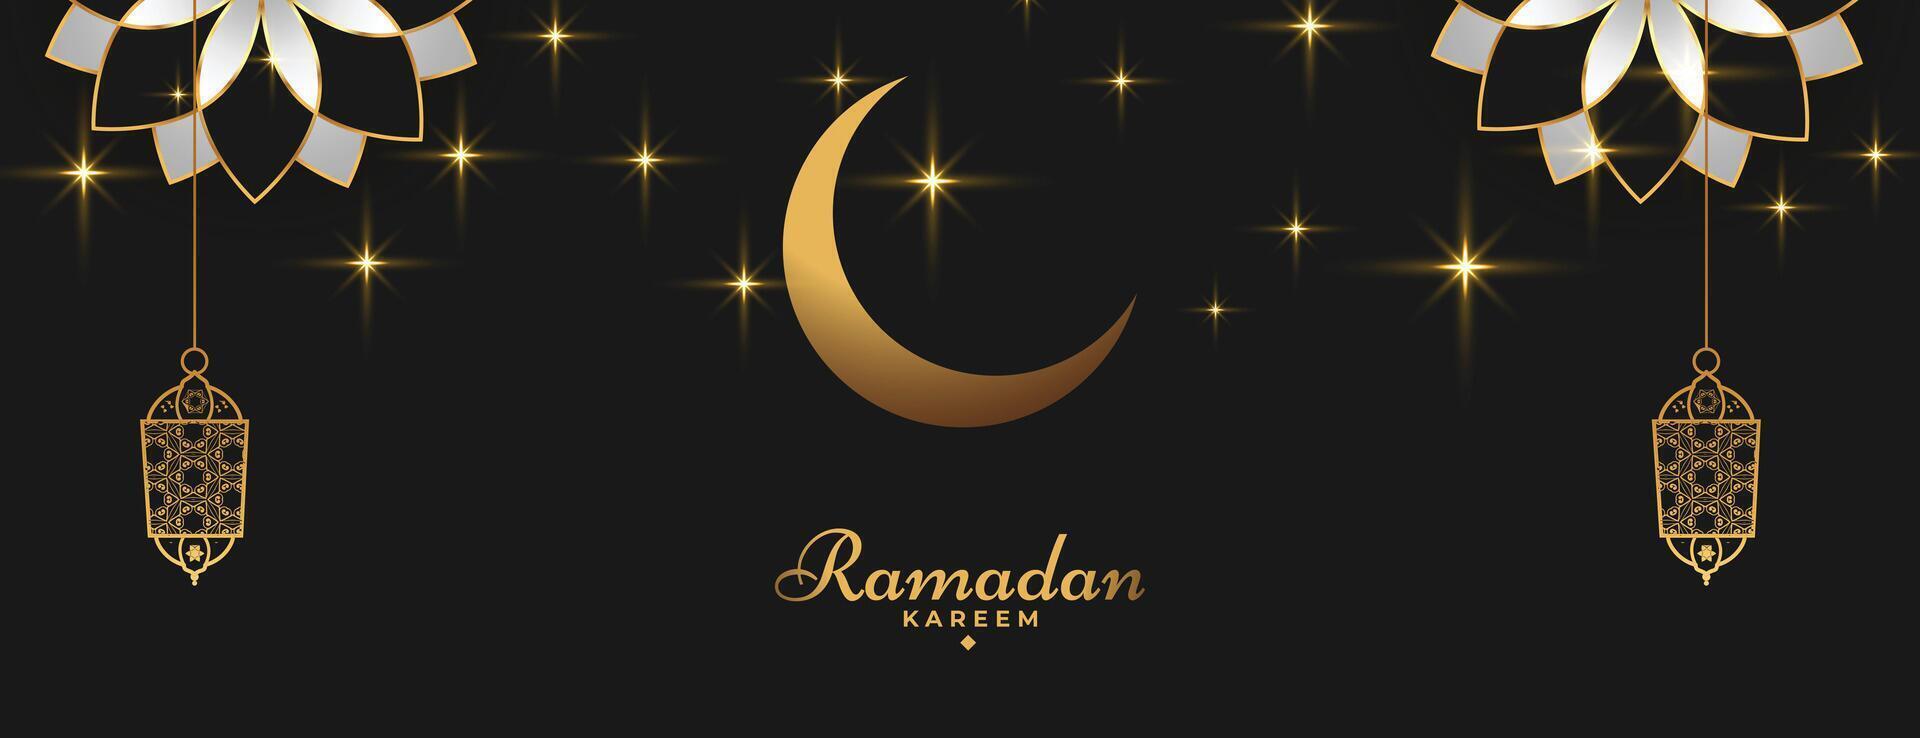 ramadan kareem islamic banner in golden black color vector